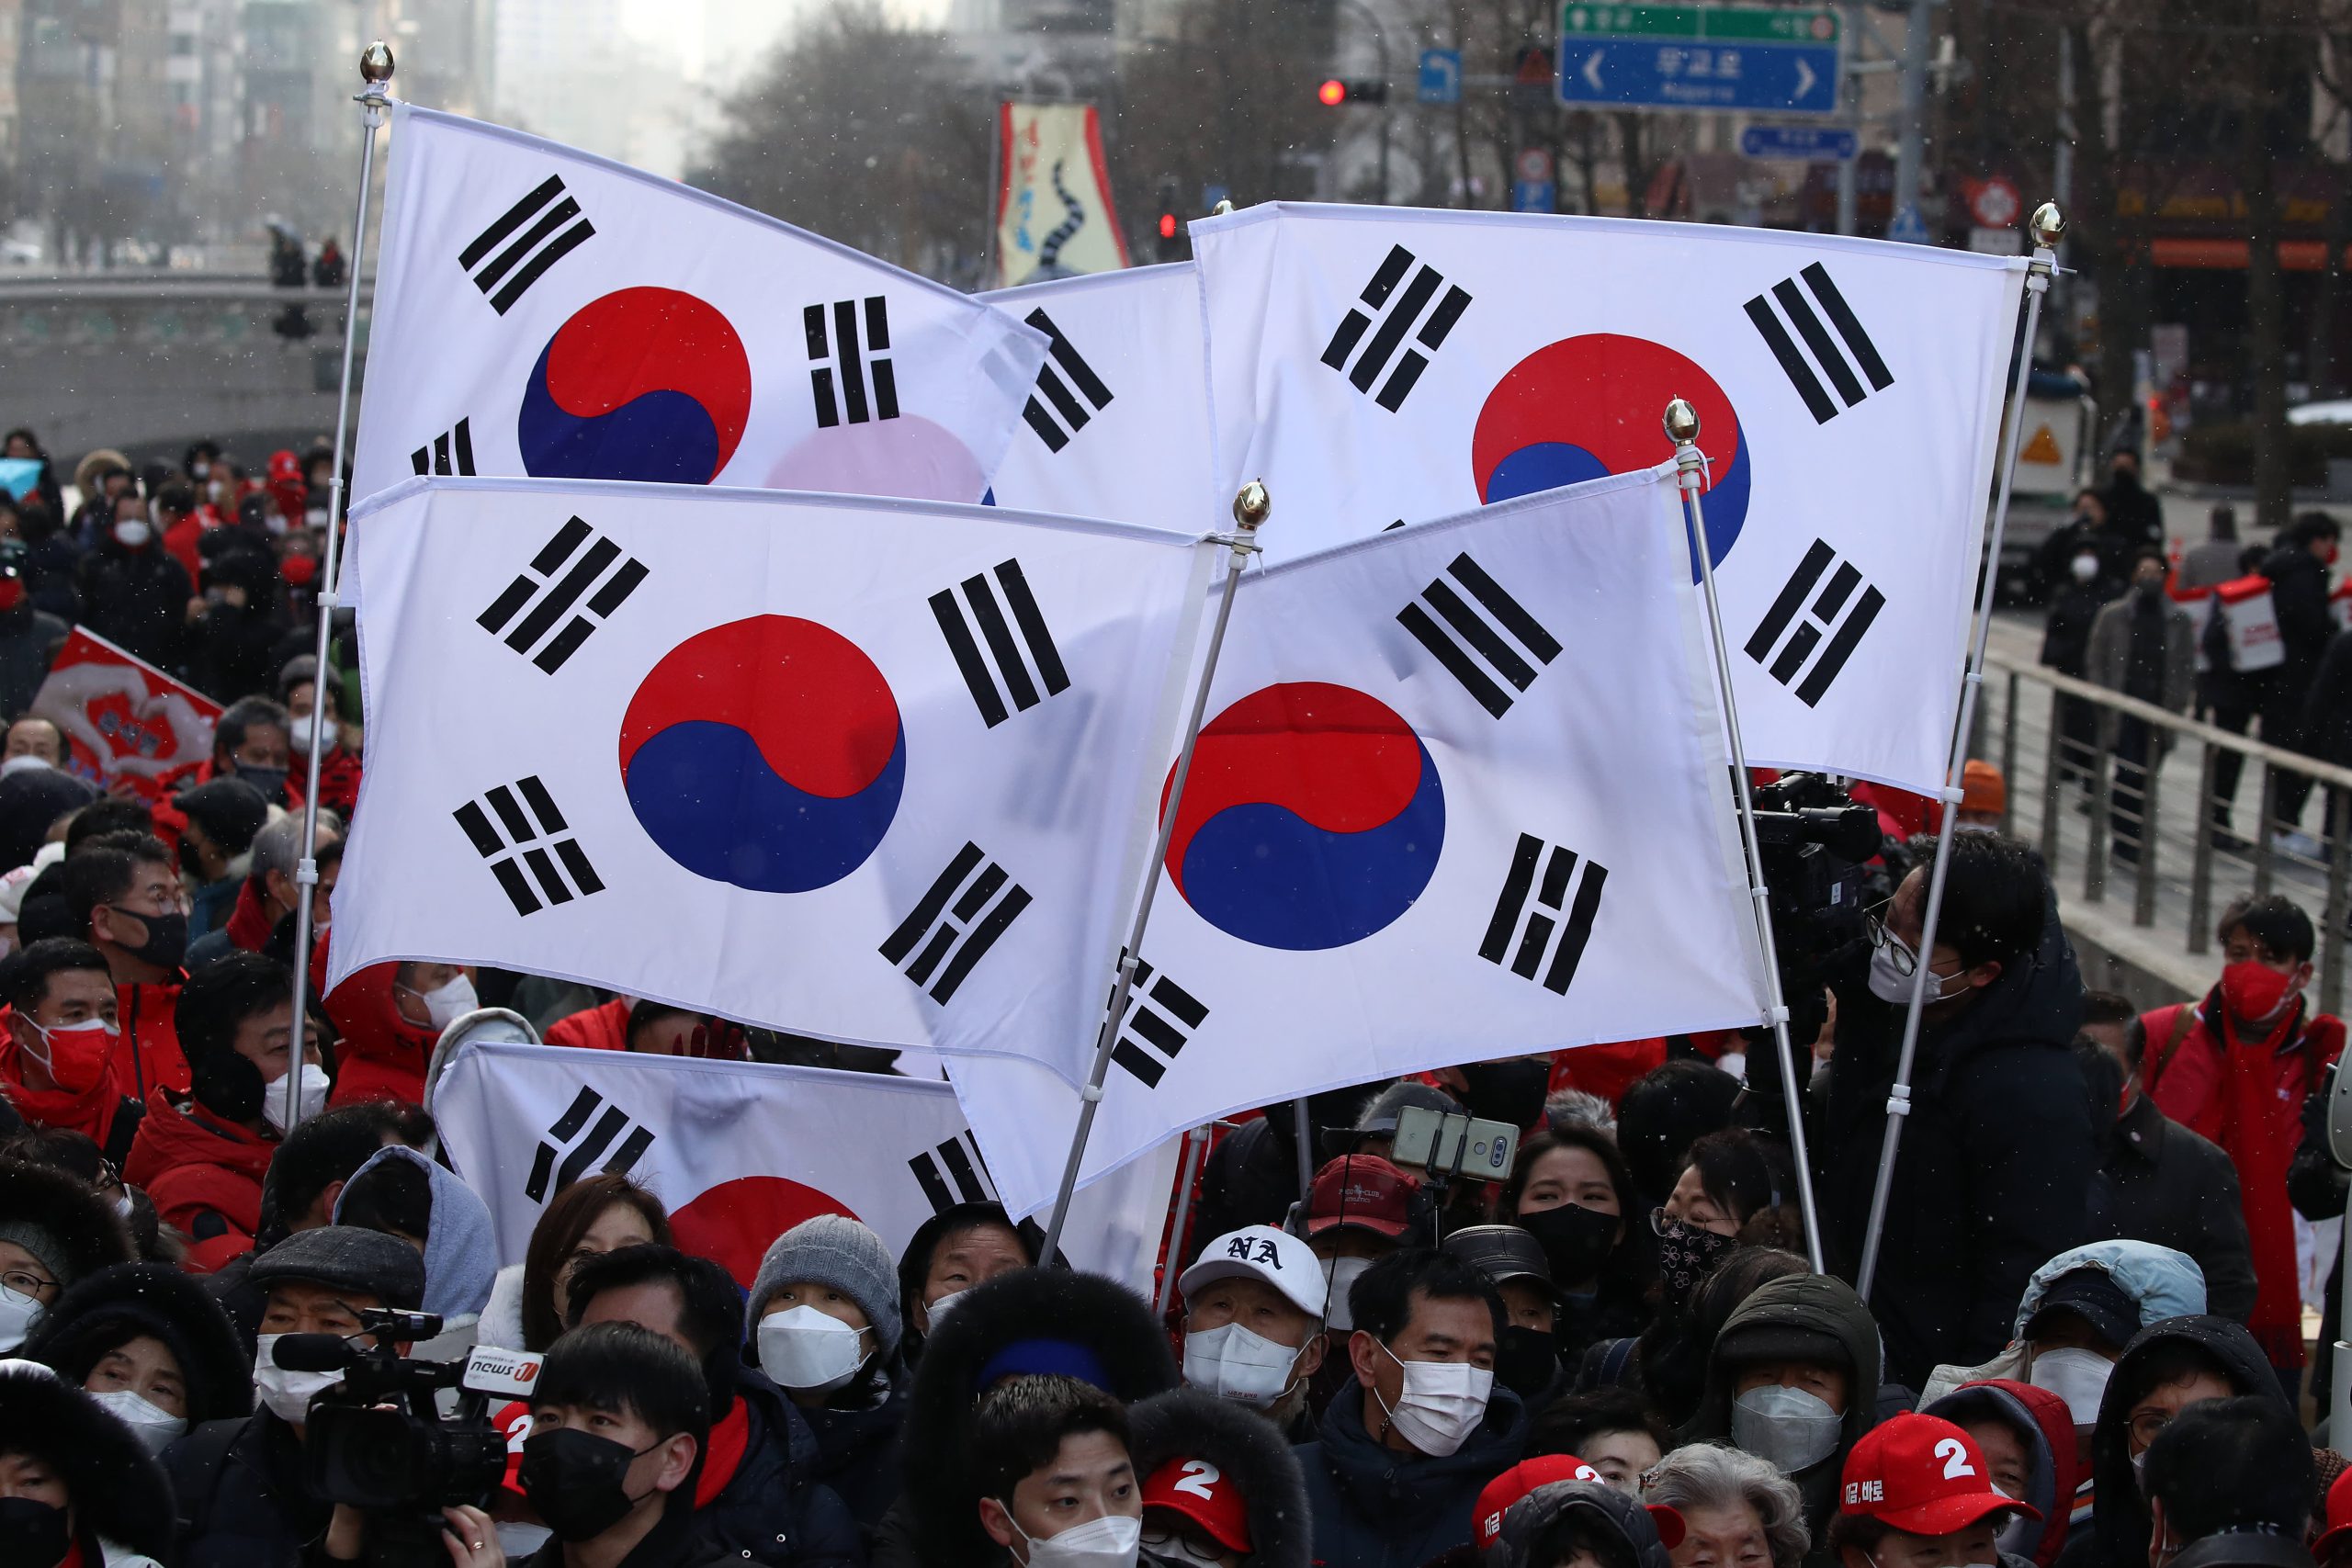 Corea del Nord, Cina e Stati Uniti seguono da vicino le elezioni sudcoreane

